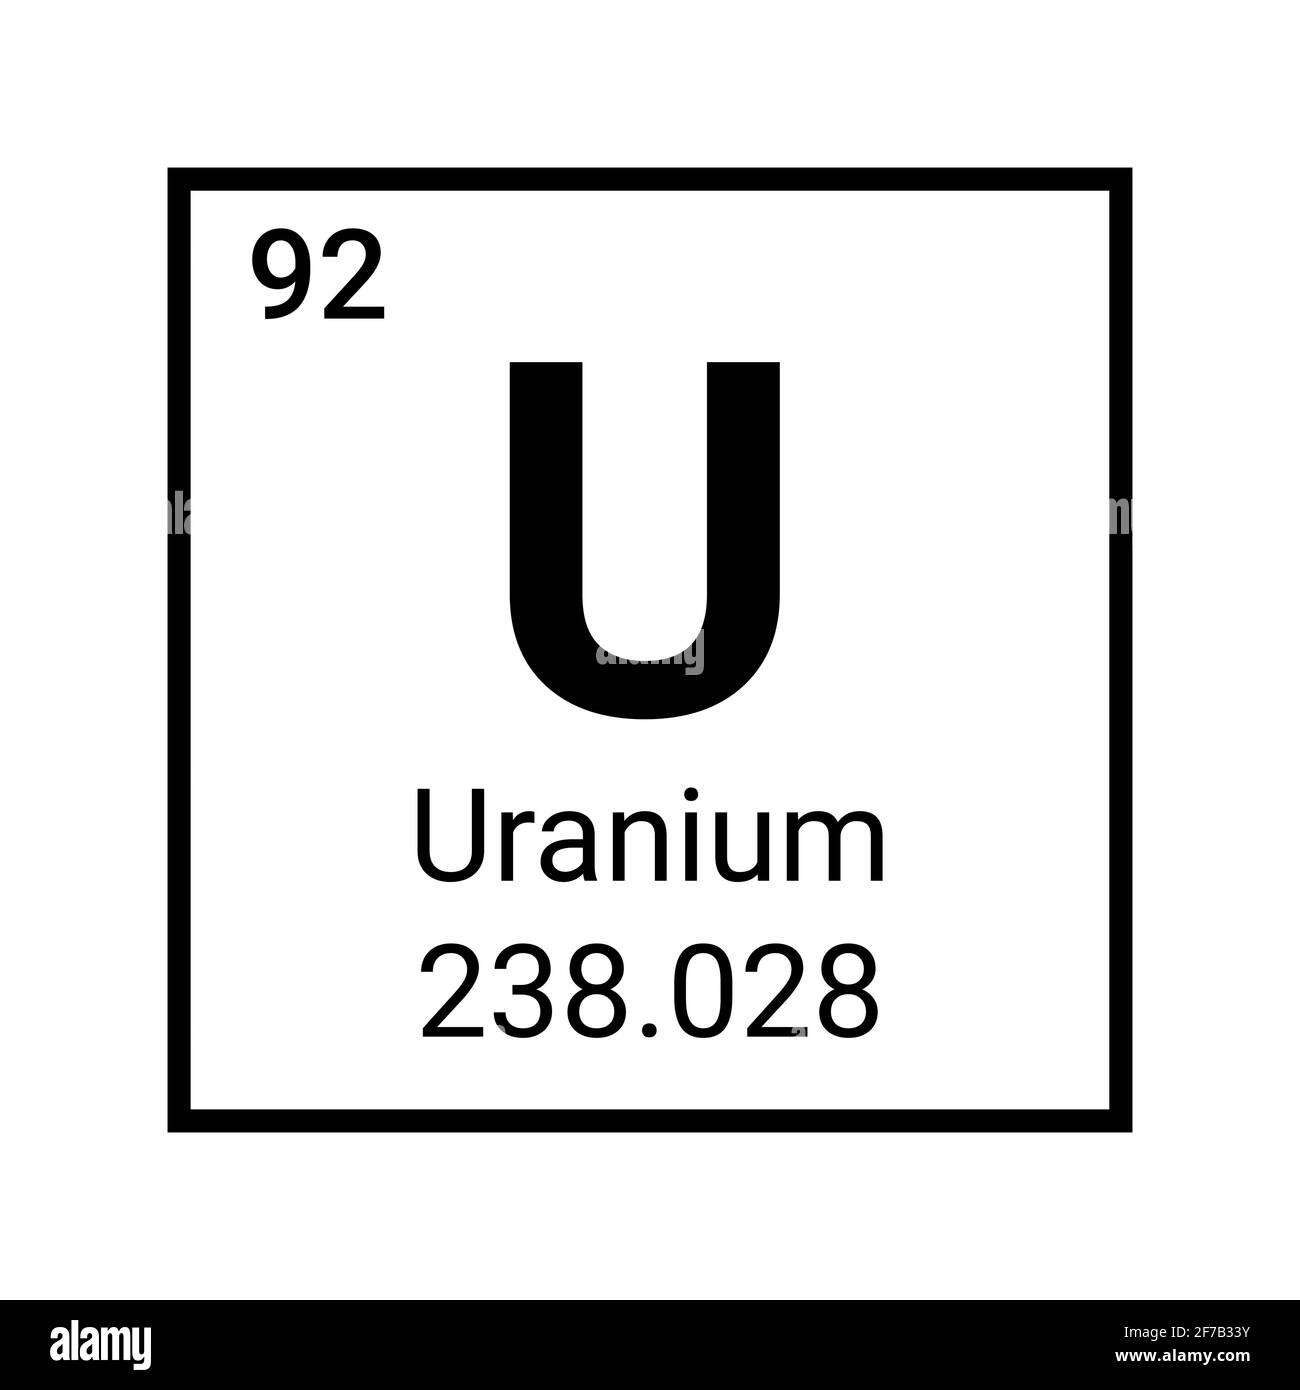 Uranium vector periodic table element. Uranium atom chemical science icon  Stock Vector Image & Art - Alamy